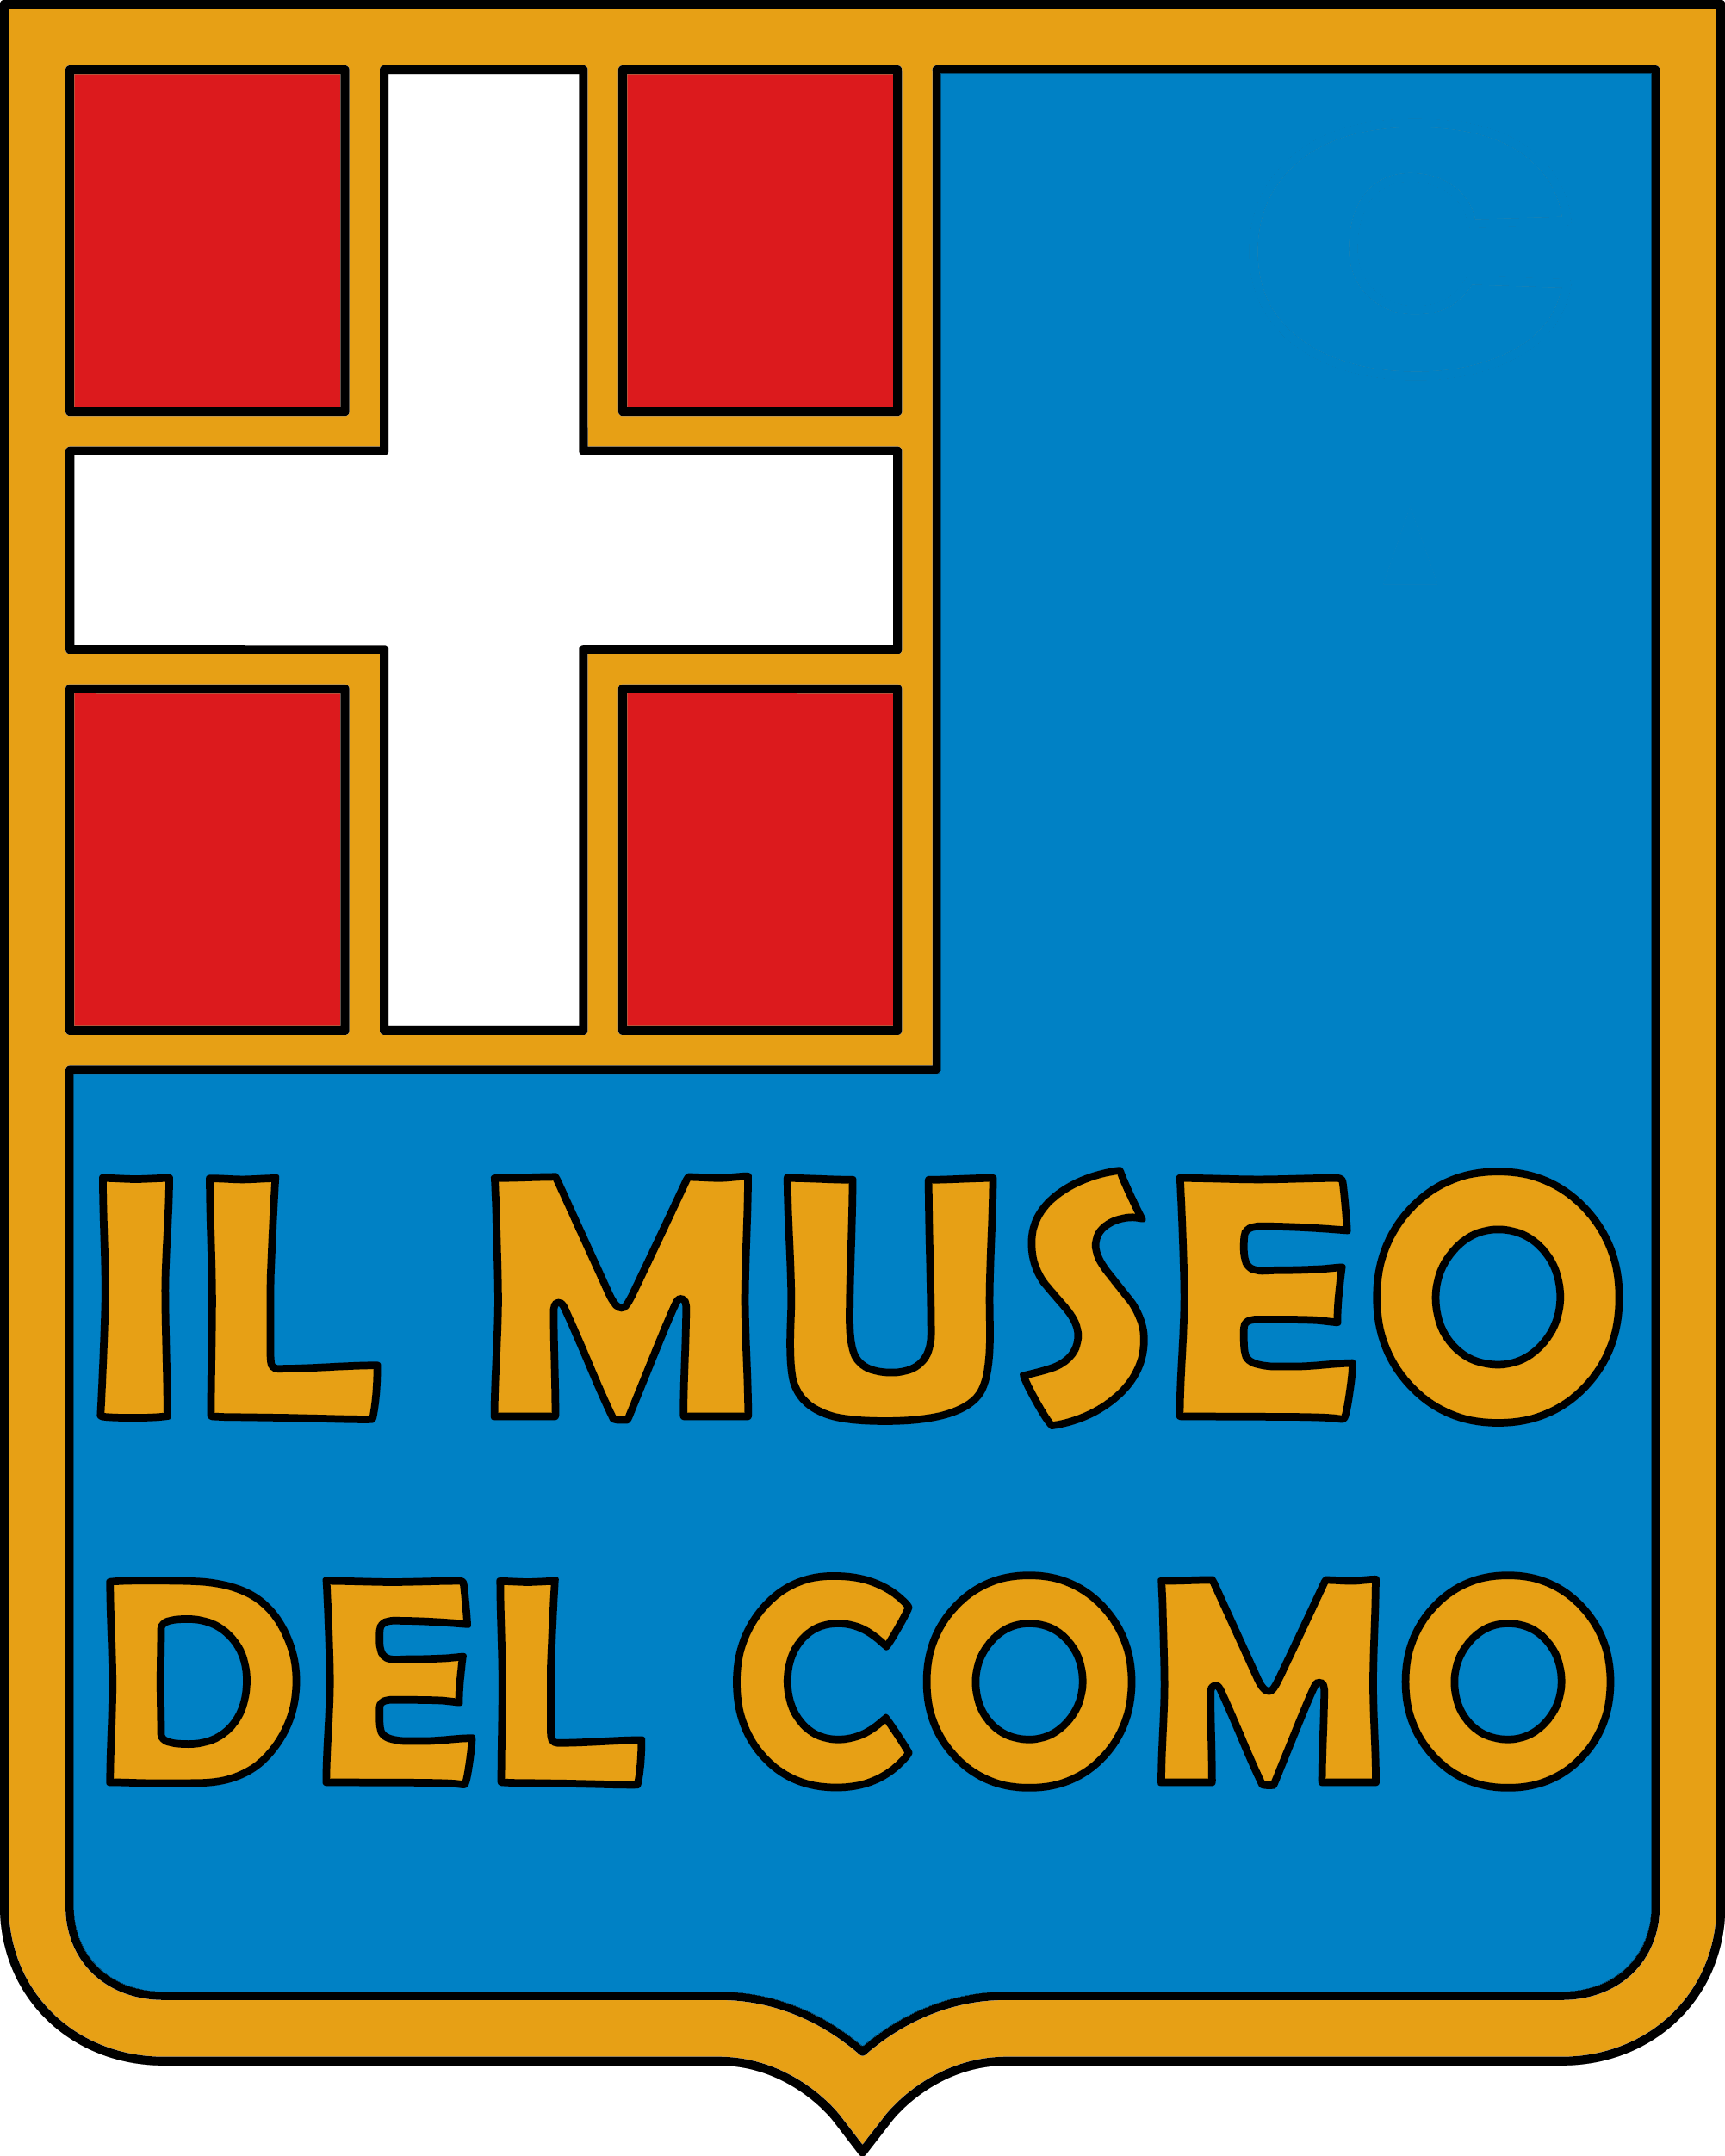 Il Museo del Como